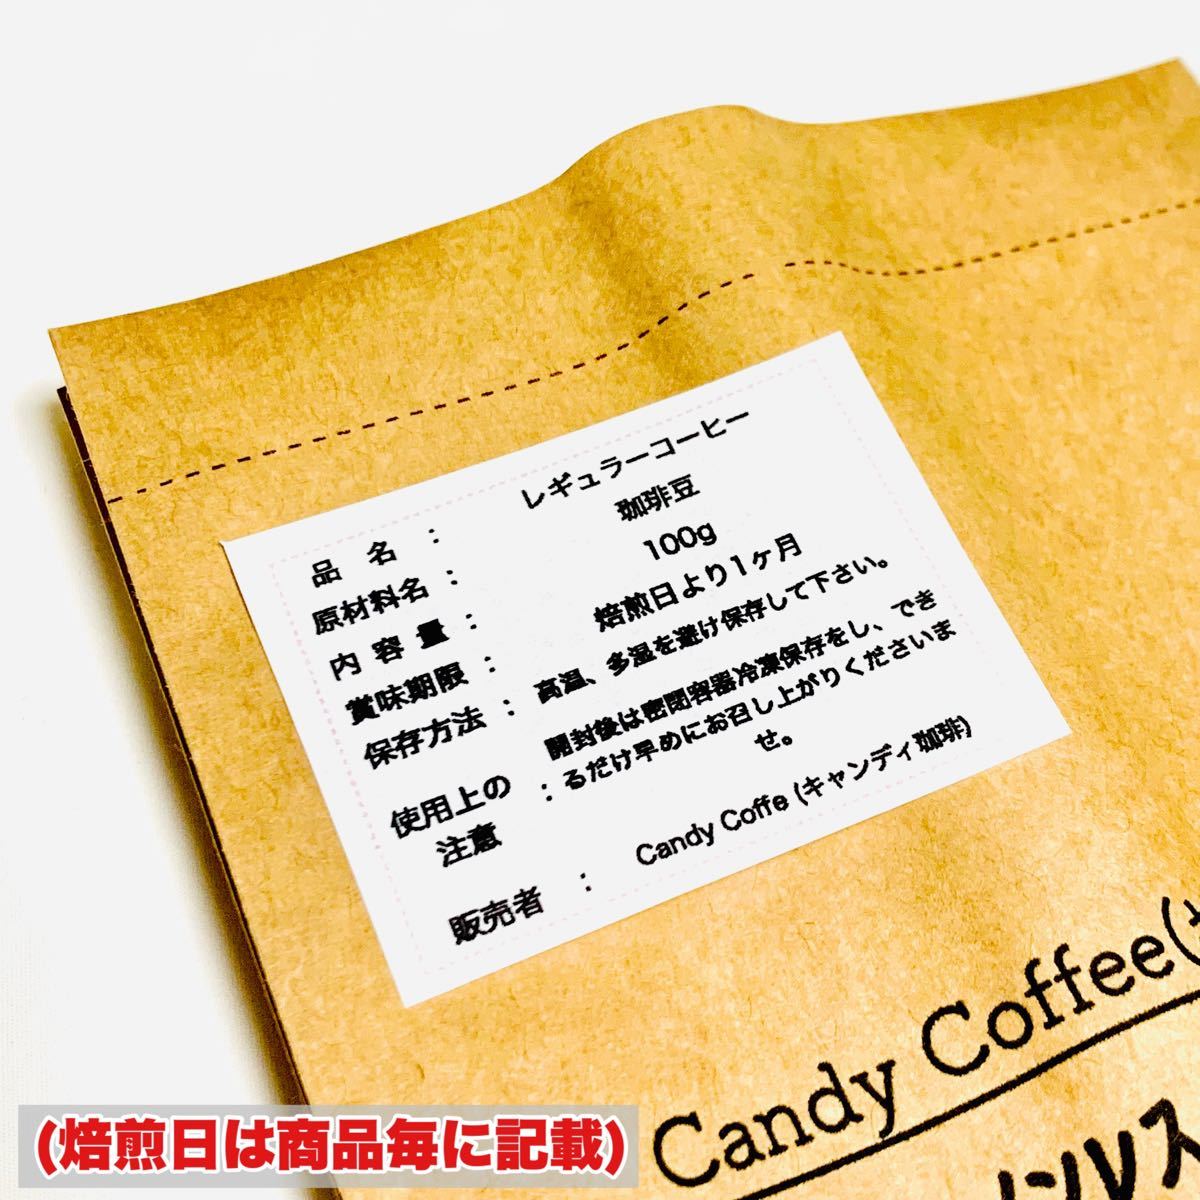 濃厚ショコラ caf 珈琲豆 自家焙煎コーヒー まろやかな甘みと広がる味わい